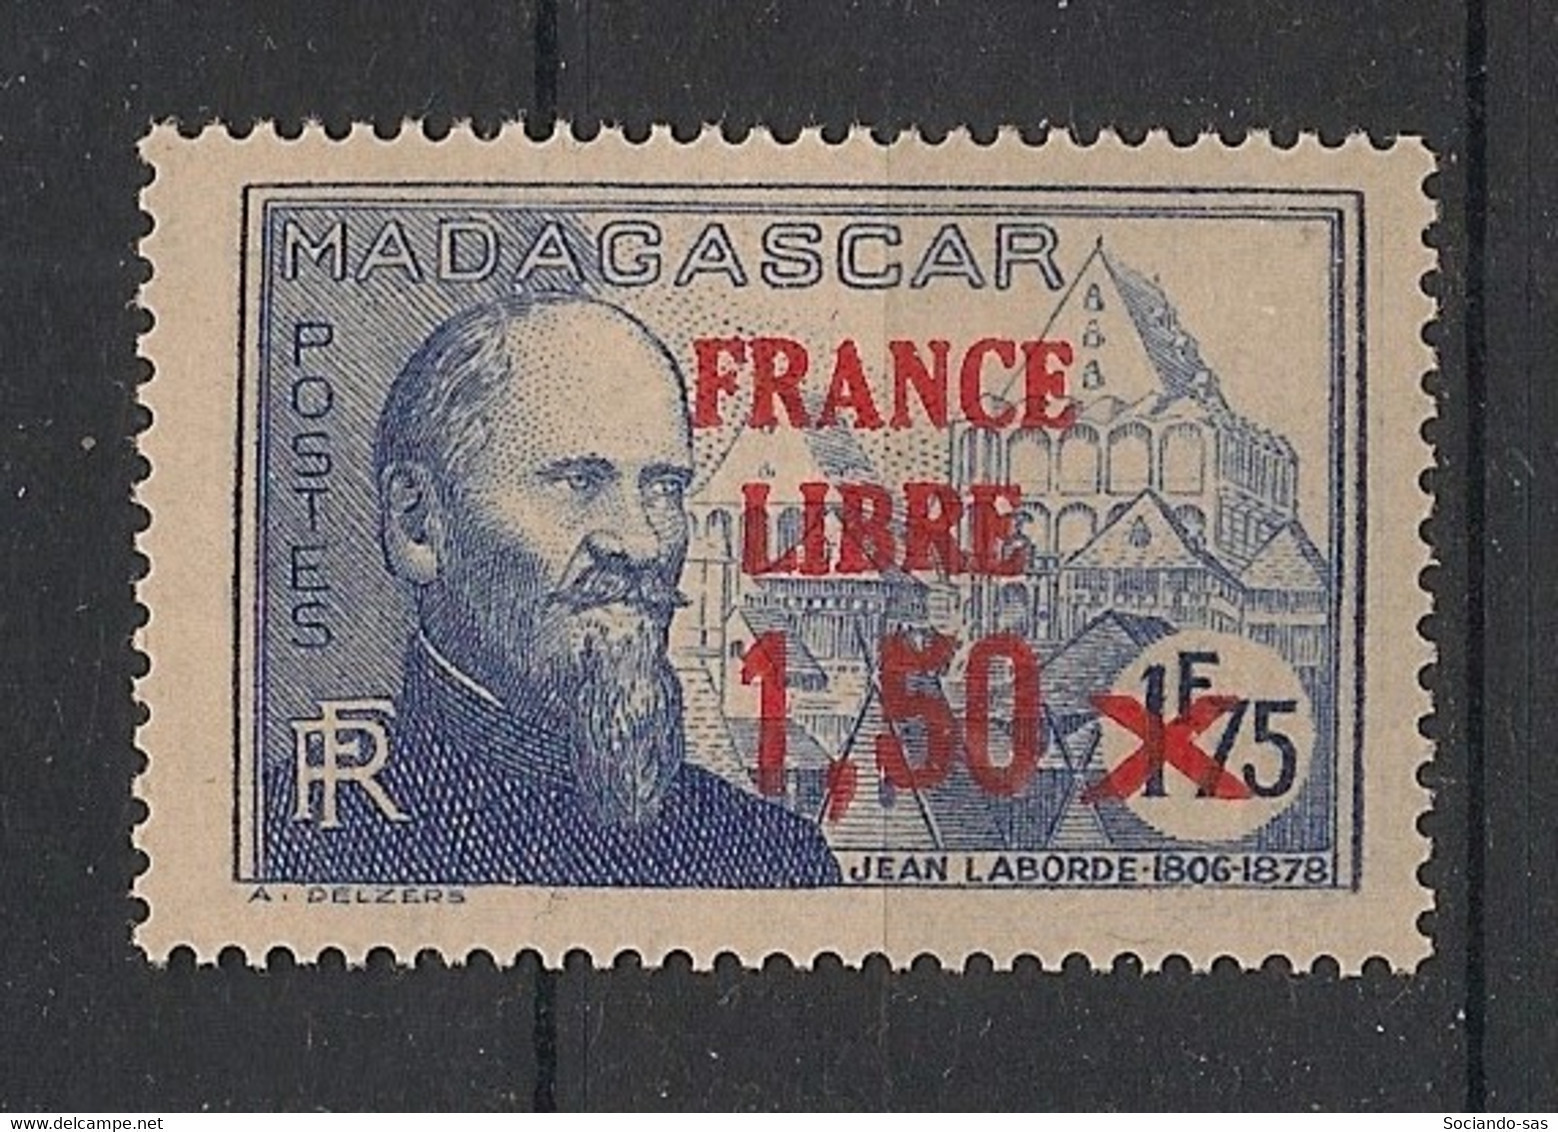 MADAGASCAR - 1942 - N°YT. 263 - France Libre 1f75 Sur 1f50 - Neuf Luxe ** / MNH / Postfrisch - Ongebruikt